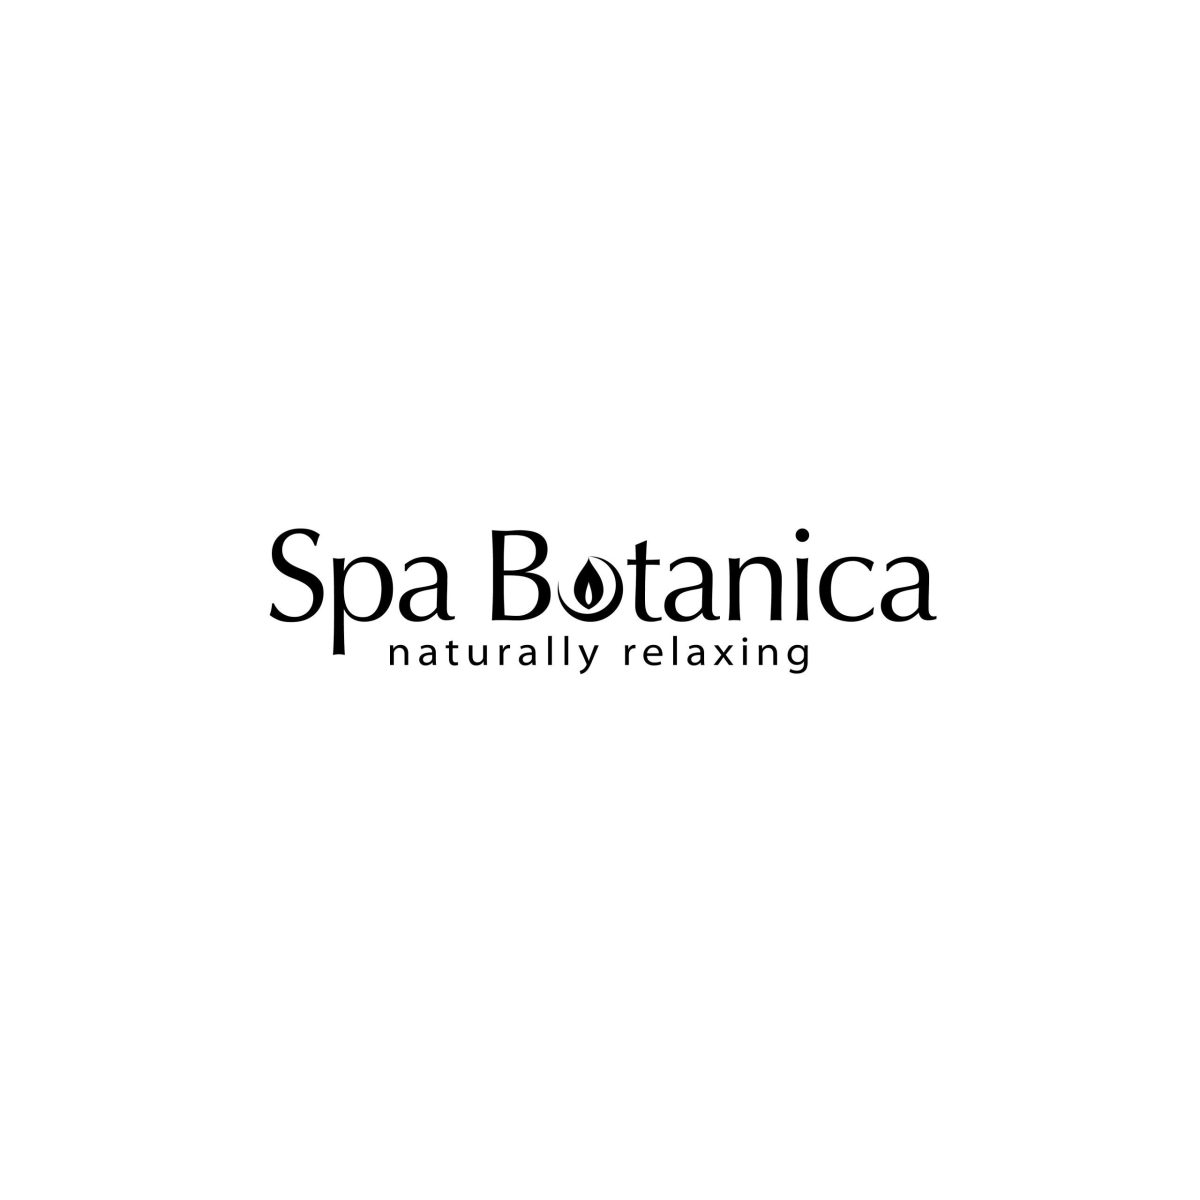 Logo__SpaBotanica__black